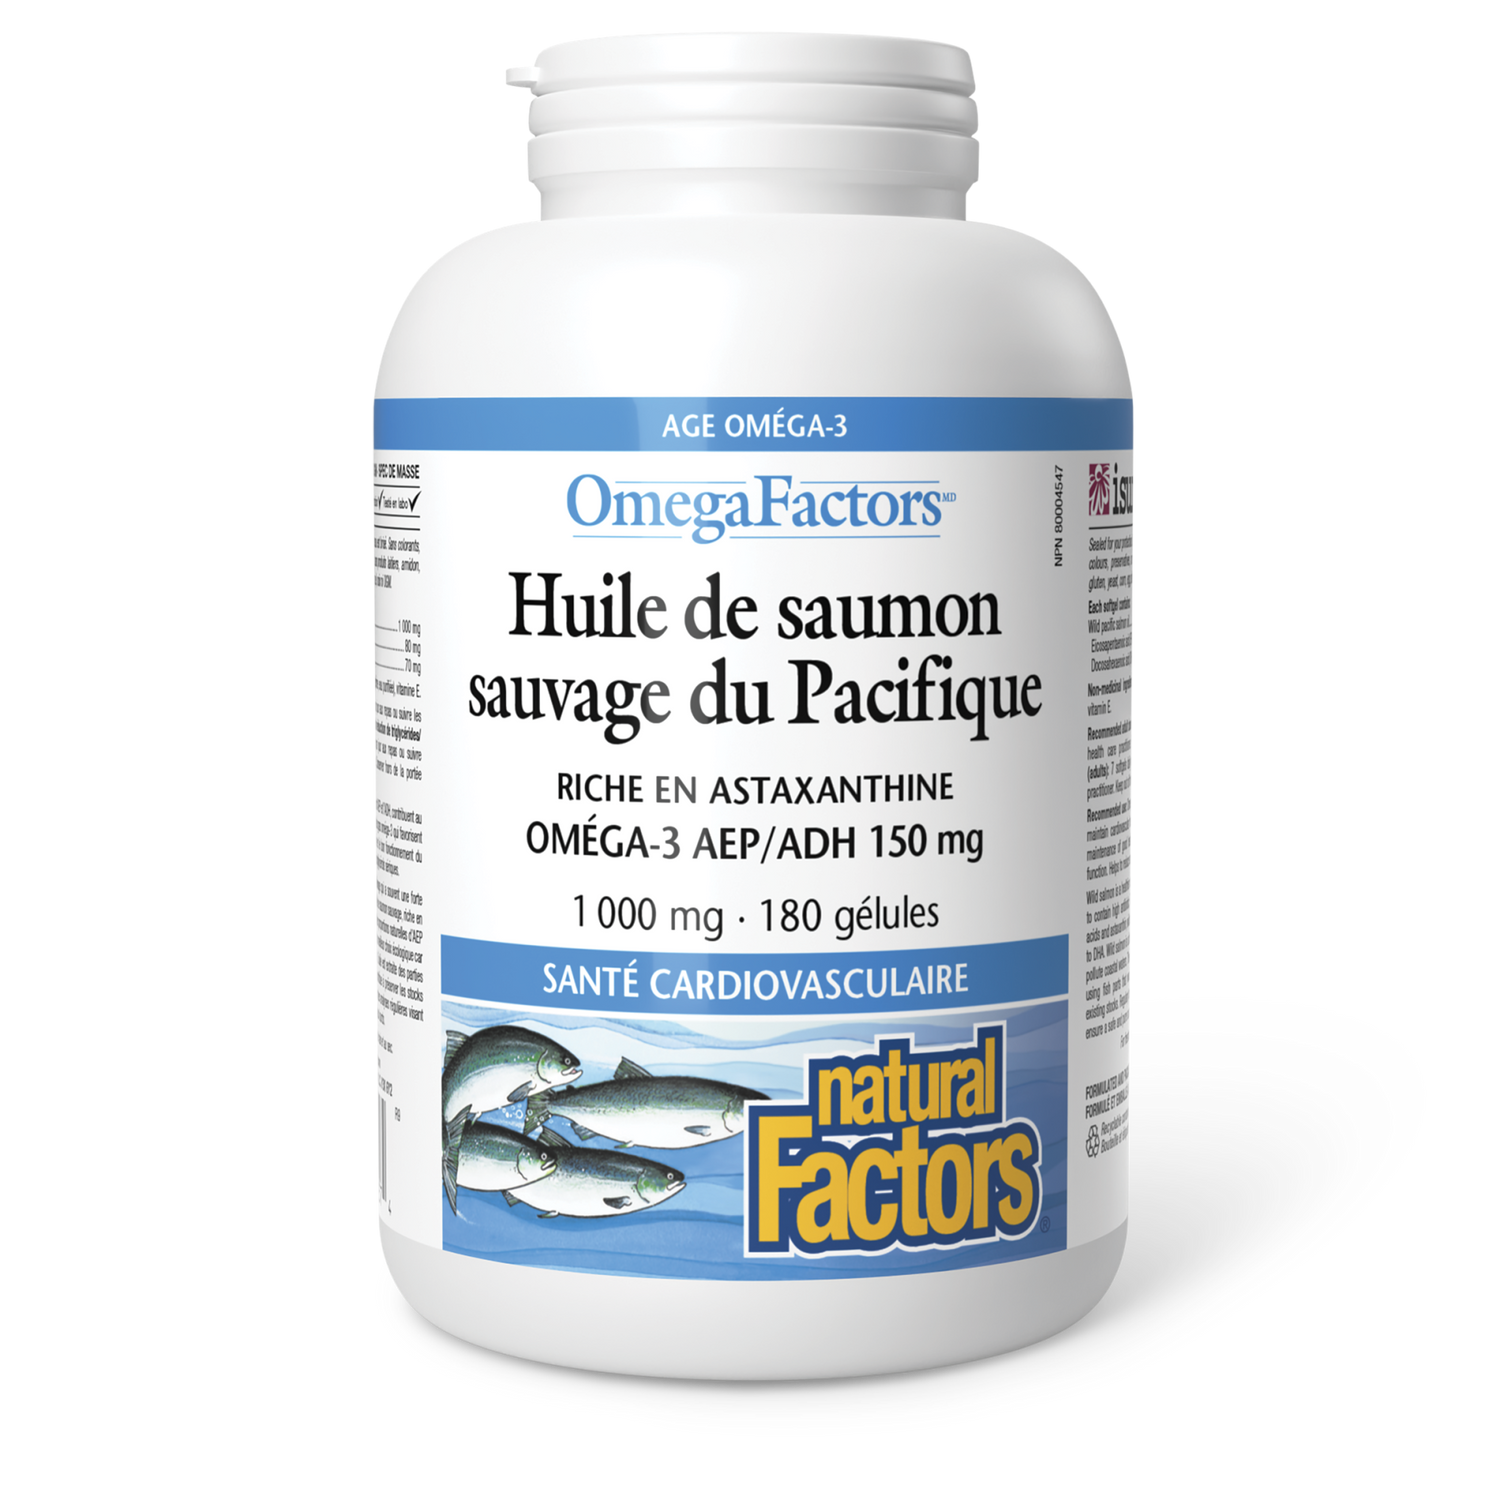 Huile de saumon sauvage du Pacifique 1 000 mg, OmegaFactors, Natural Factors|v|image|2257